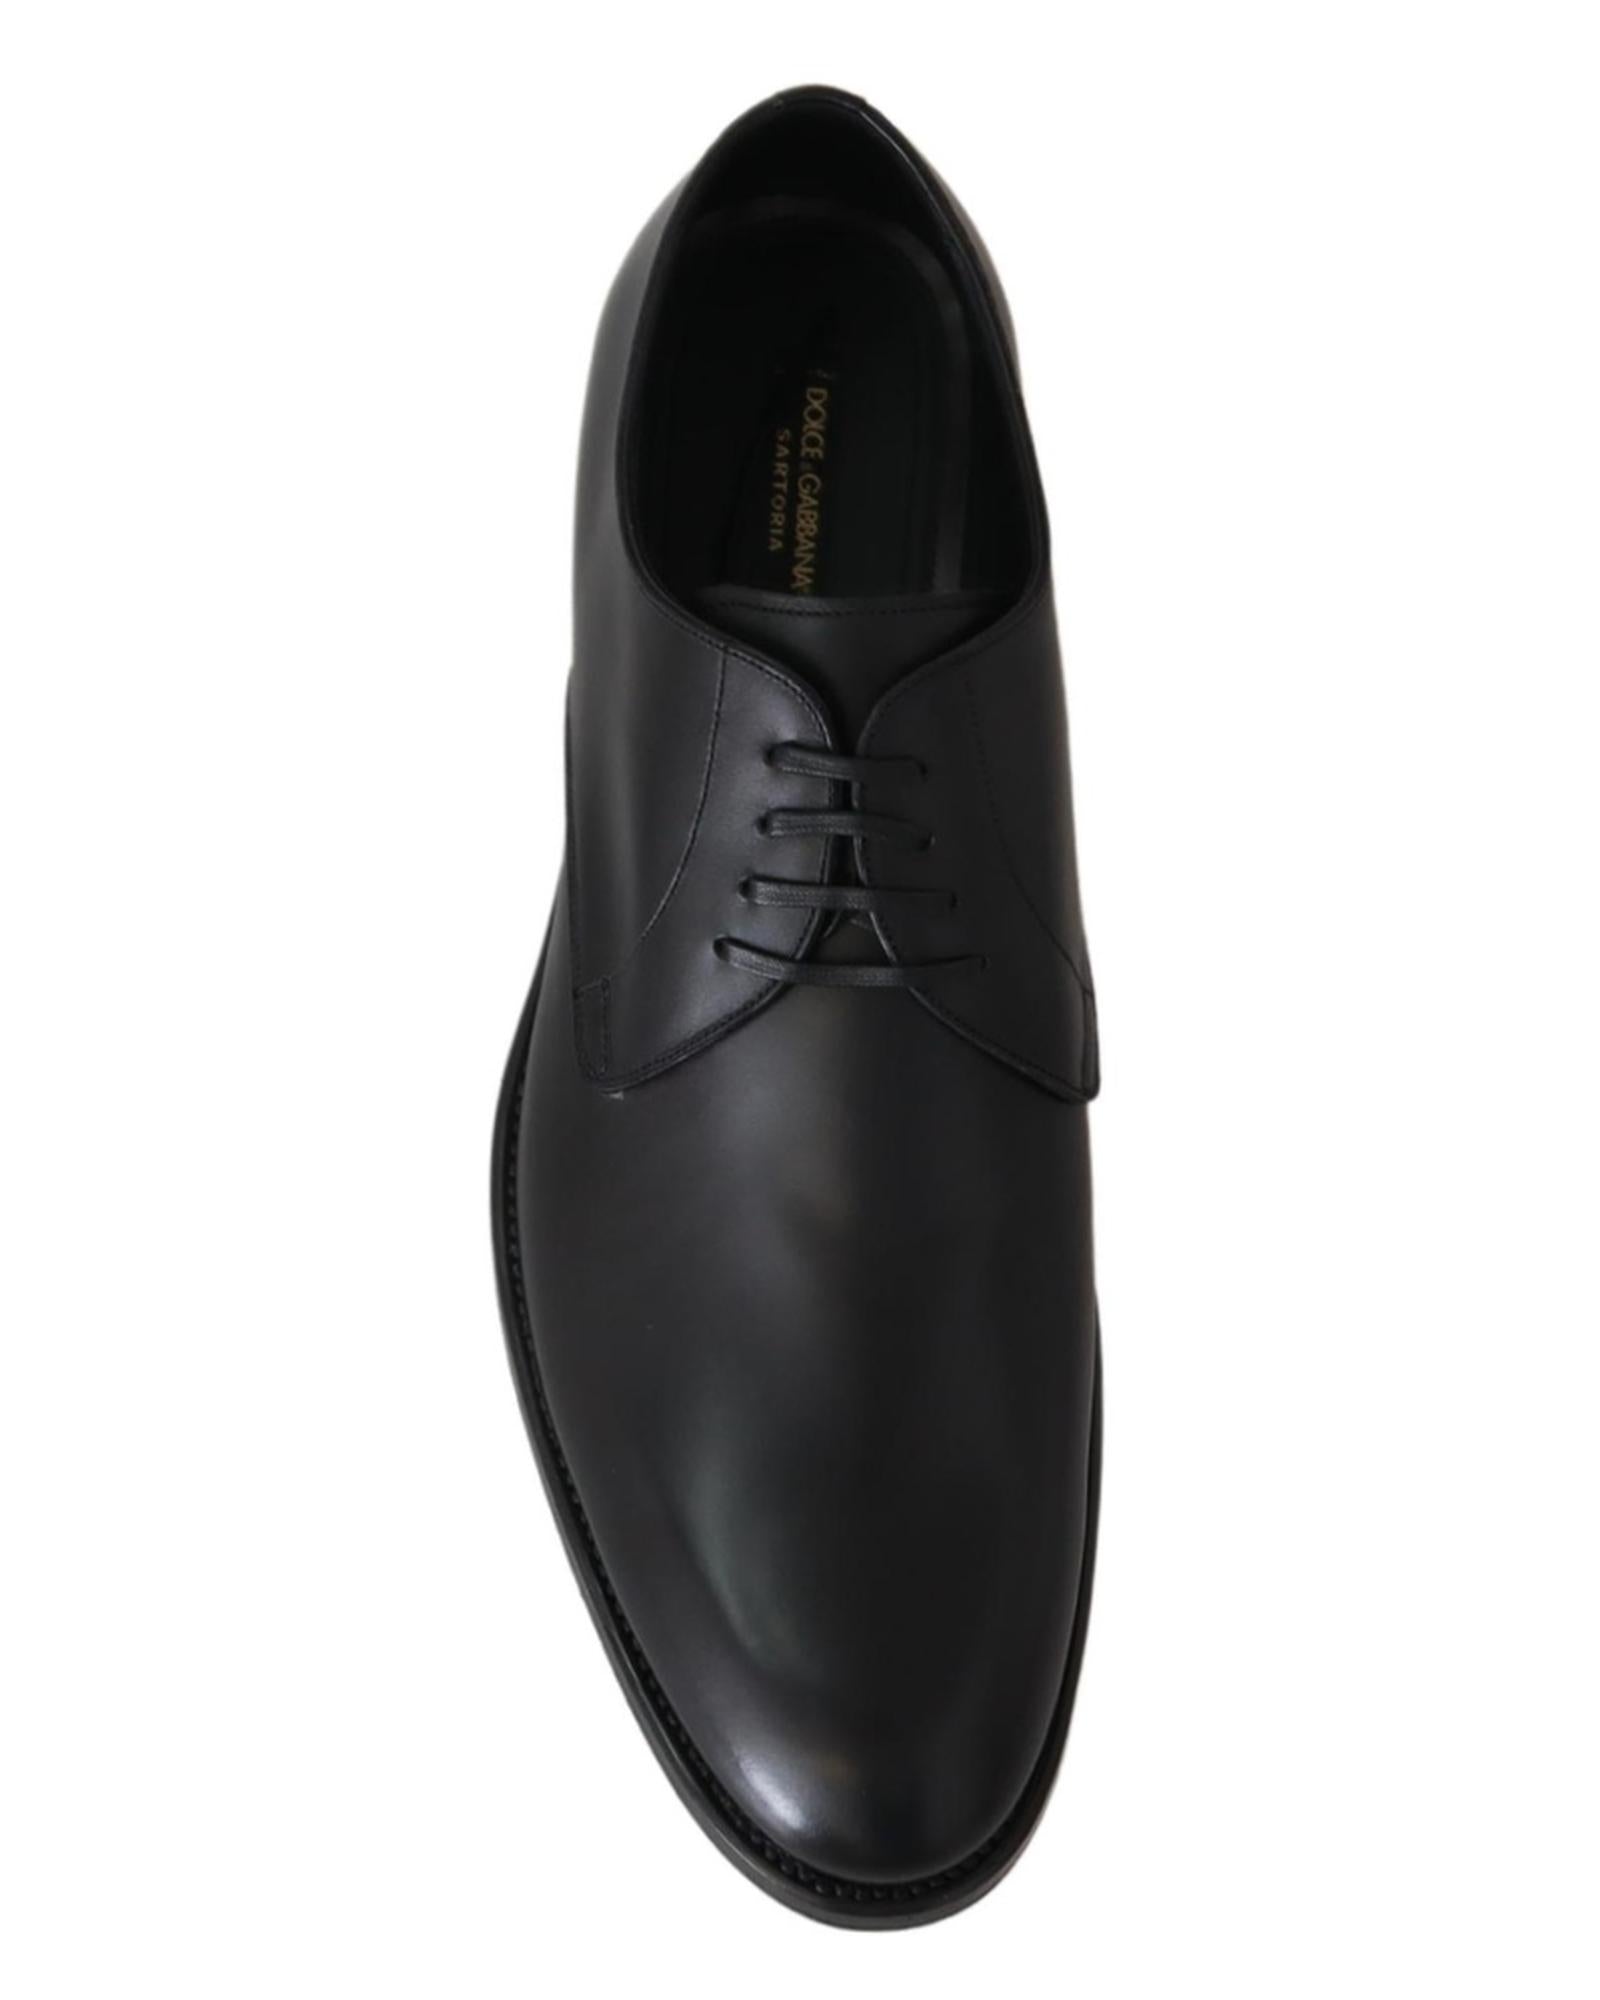 Handcrafted Black Leather Derby Dress Formal Shoes 40.5 EU Men